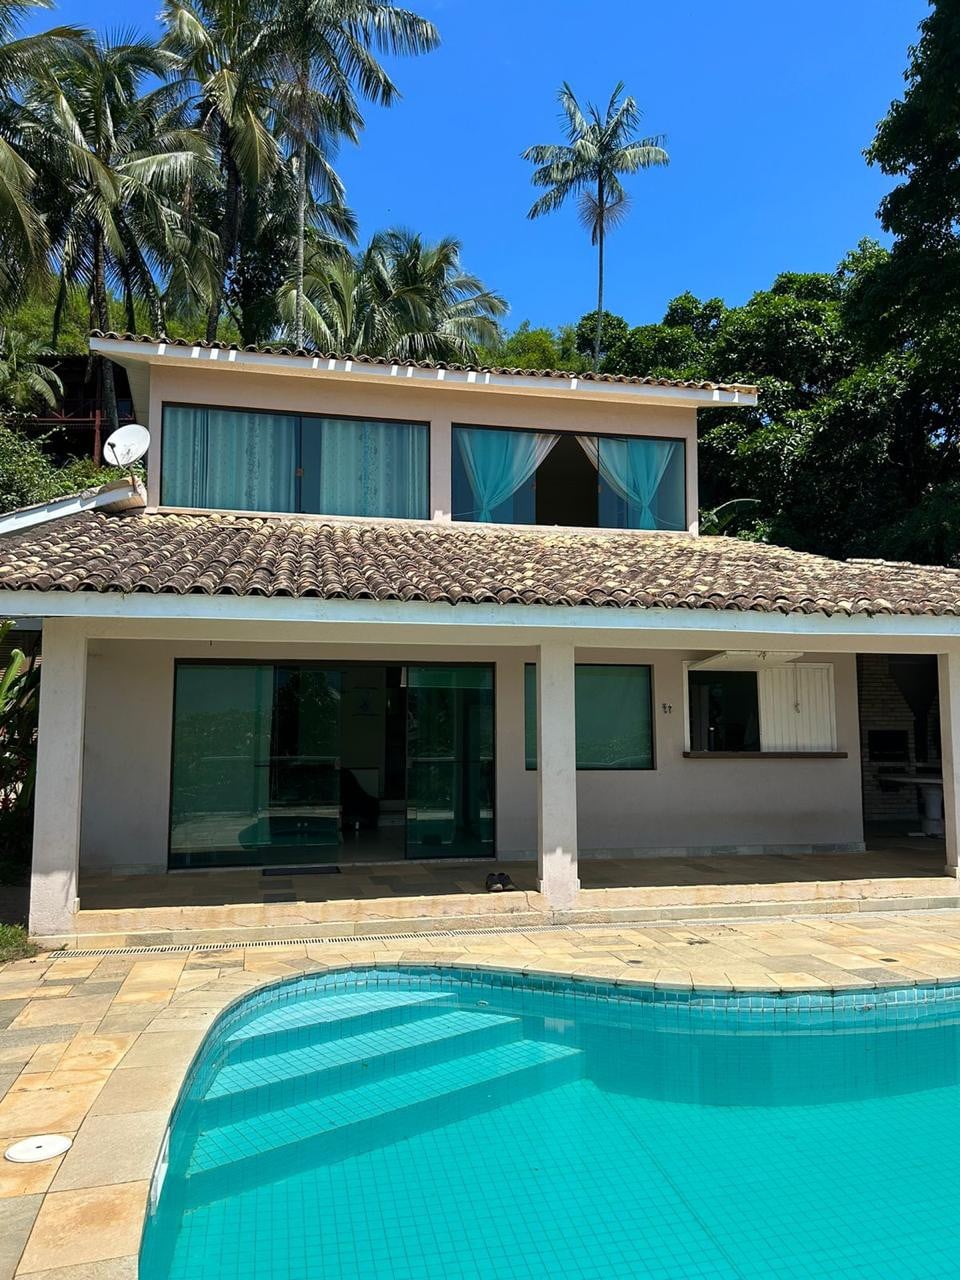 Casa com piscina em IlhaBela